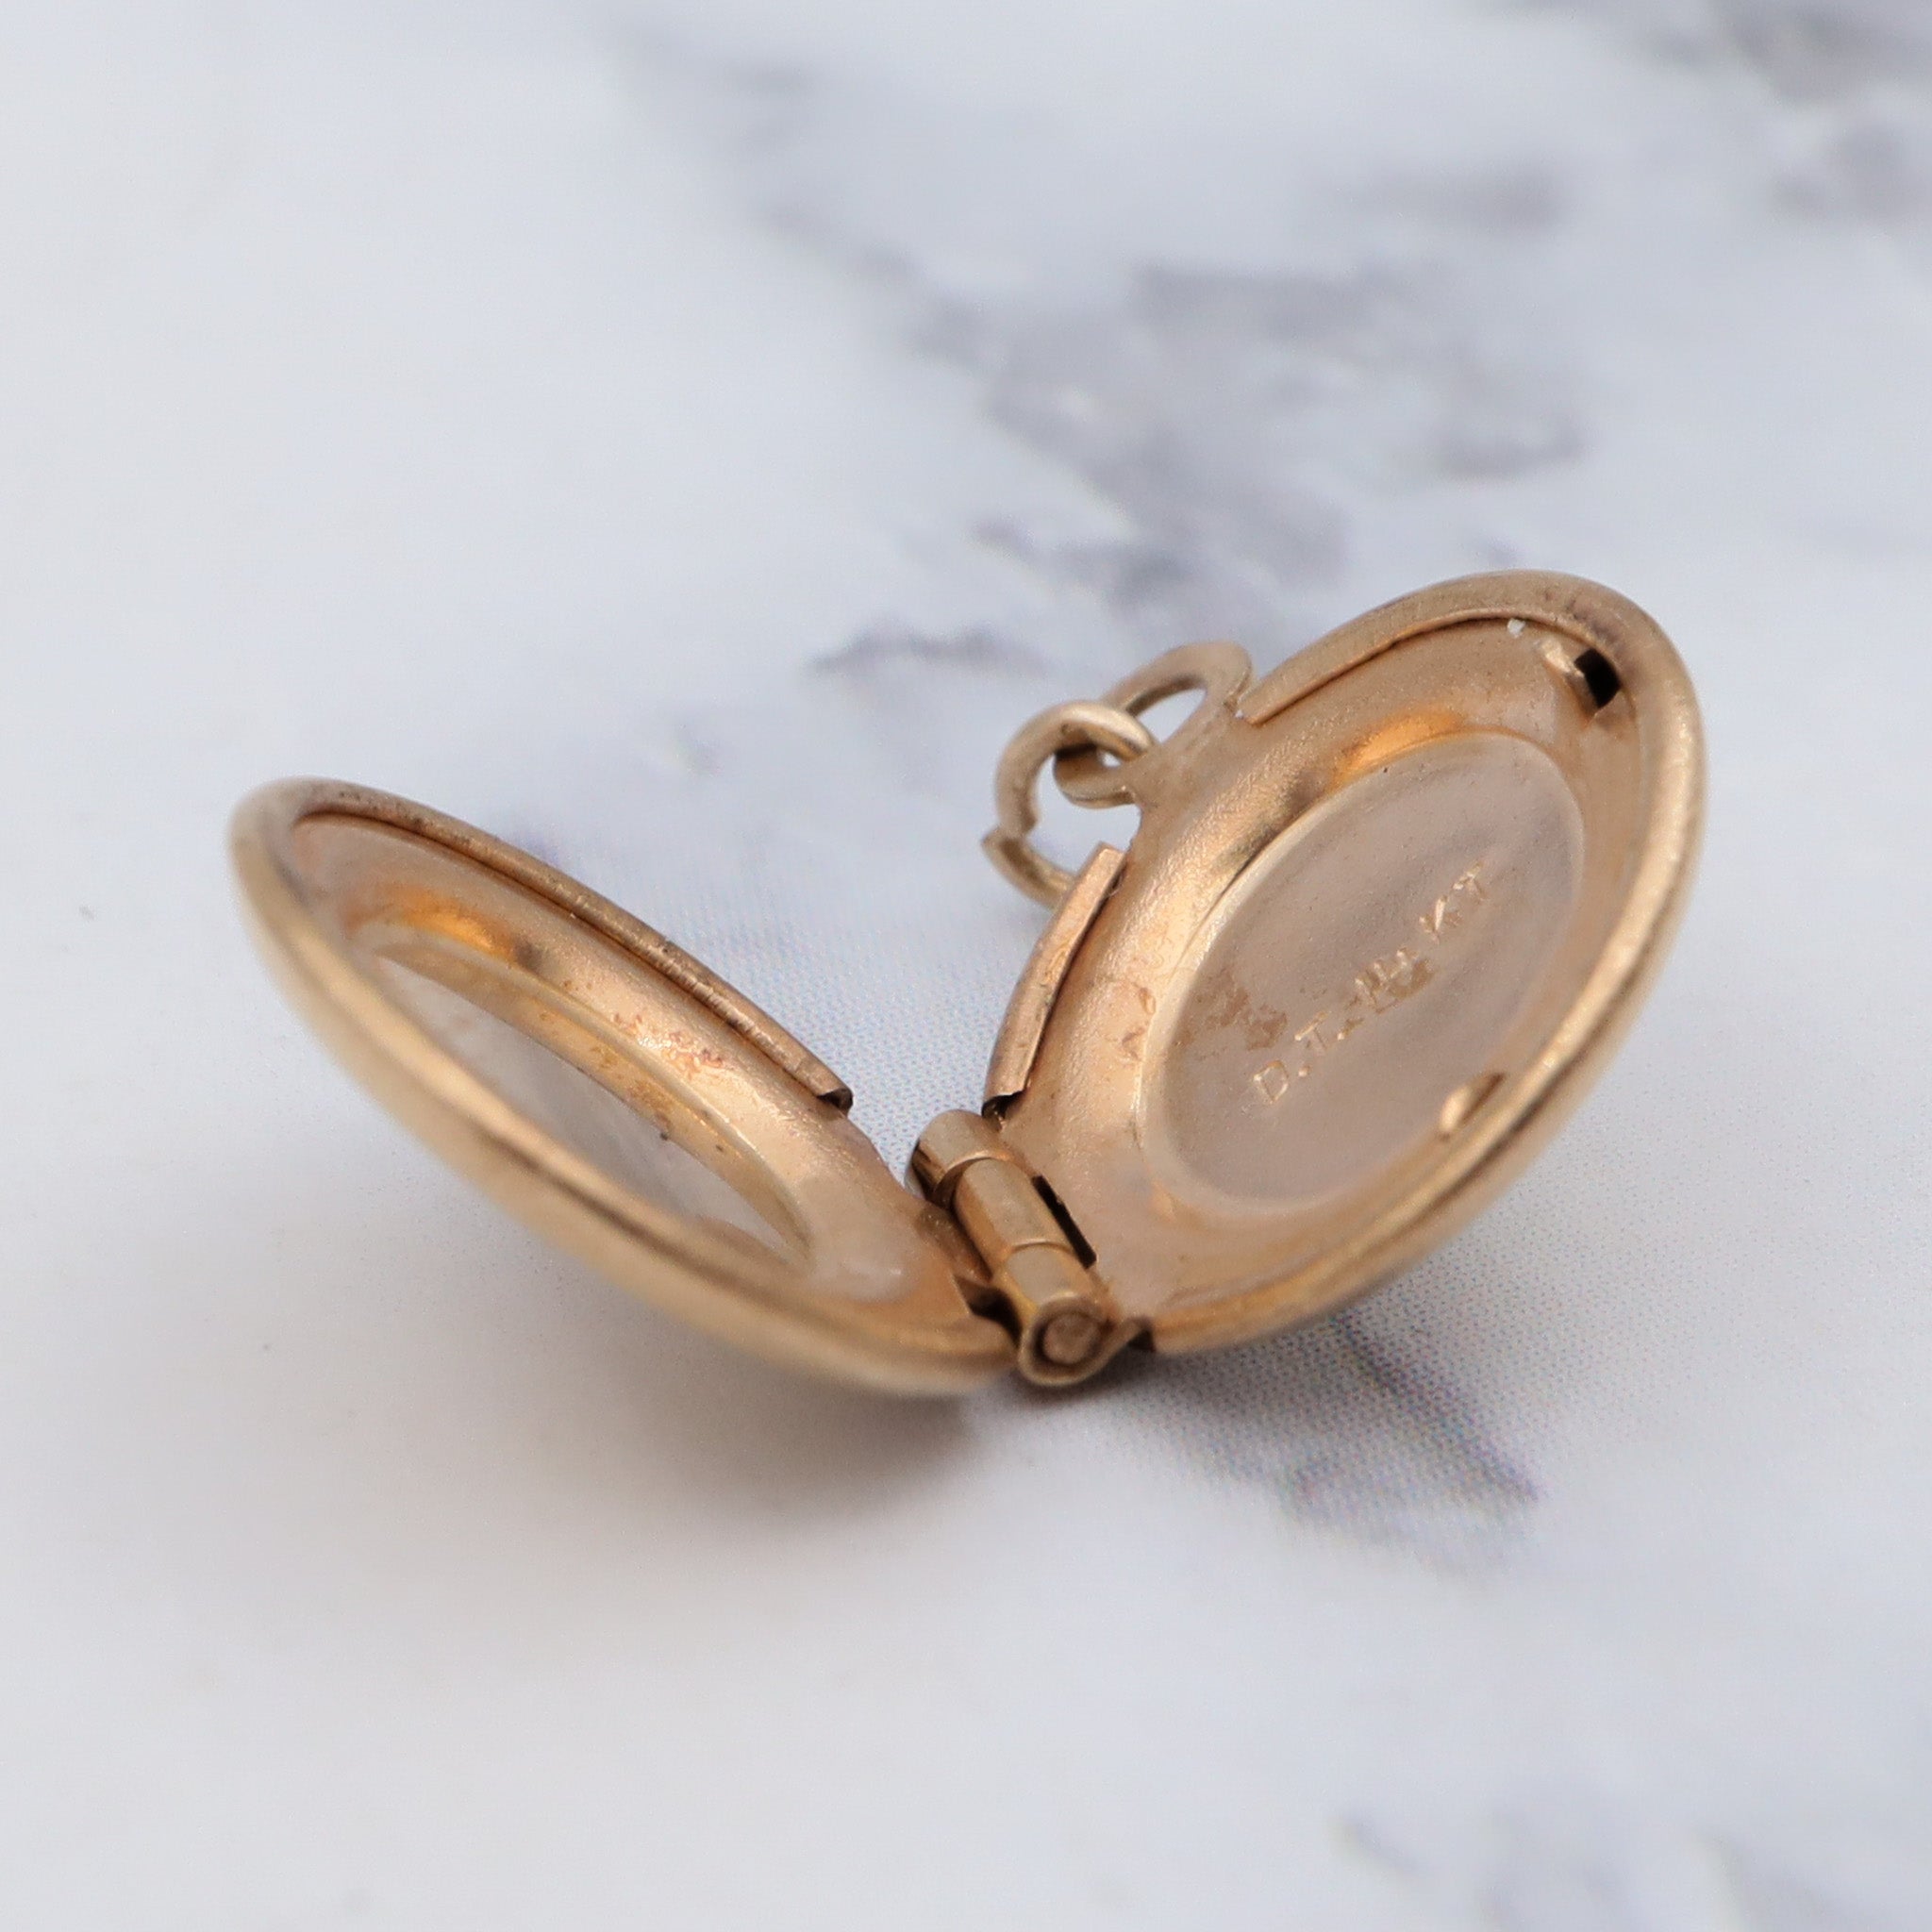 Tiny vintage 14k gold round locket